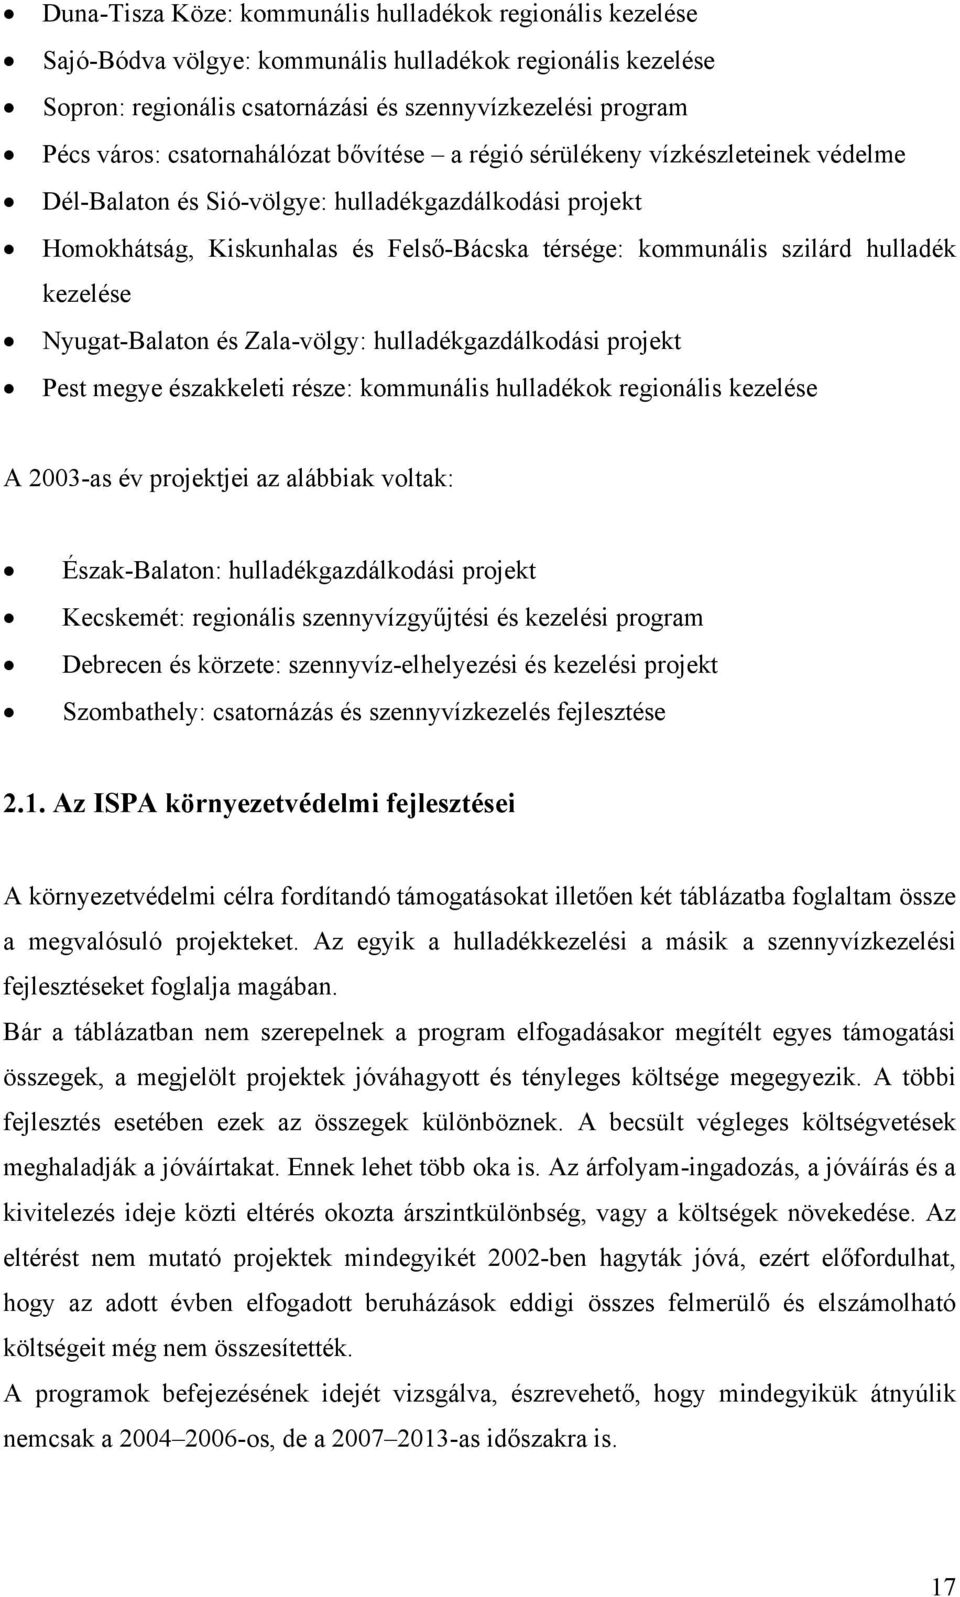 hulladék kezelése Nyugat-Balaton és Zala-völgy: hulladékgazdálkodási projekt Pest megye északkeleti része: kommunális hulladékok regionális kezelése A 2003-as év projektjei az alábbiak voltak: